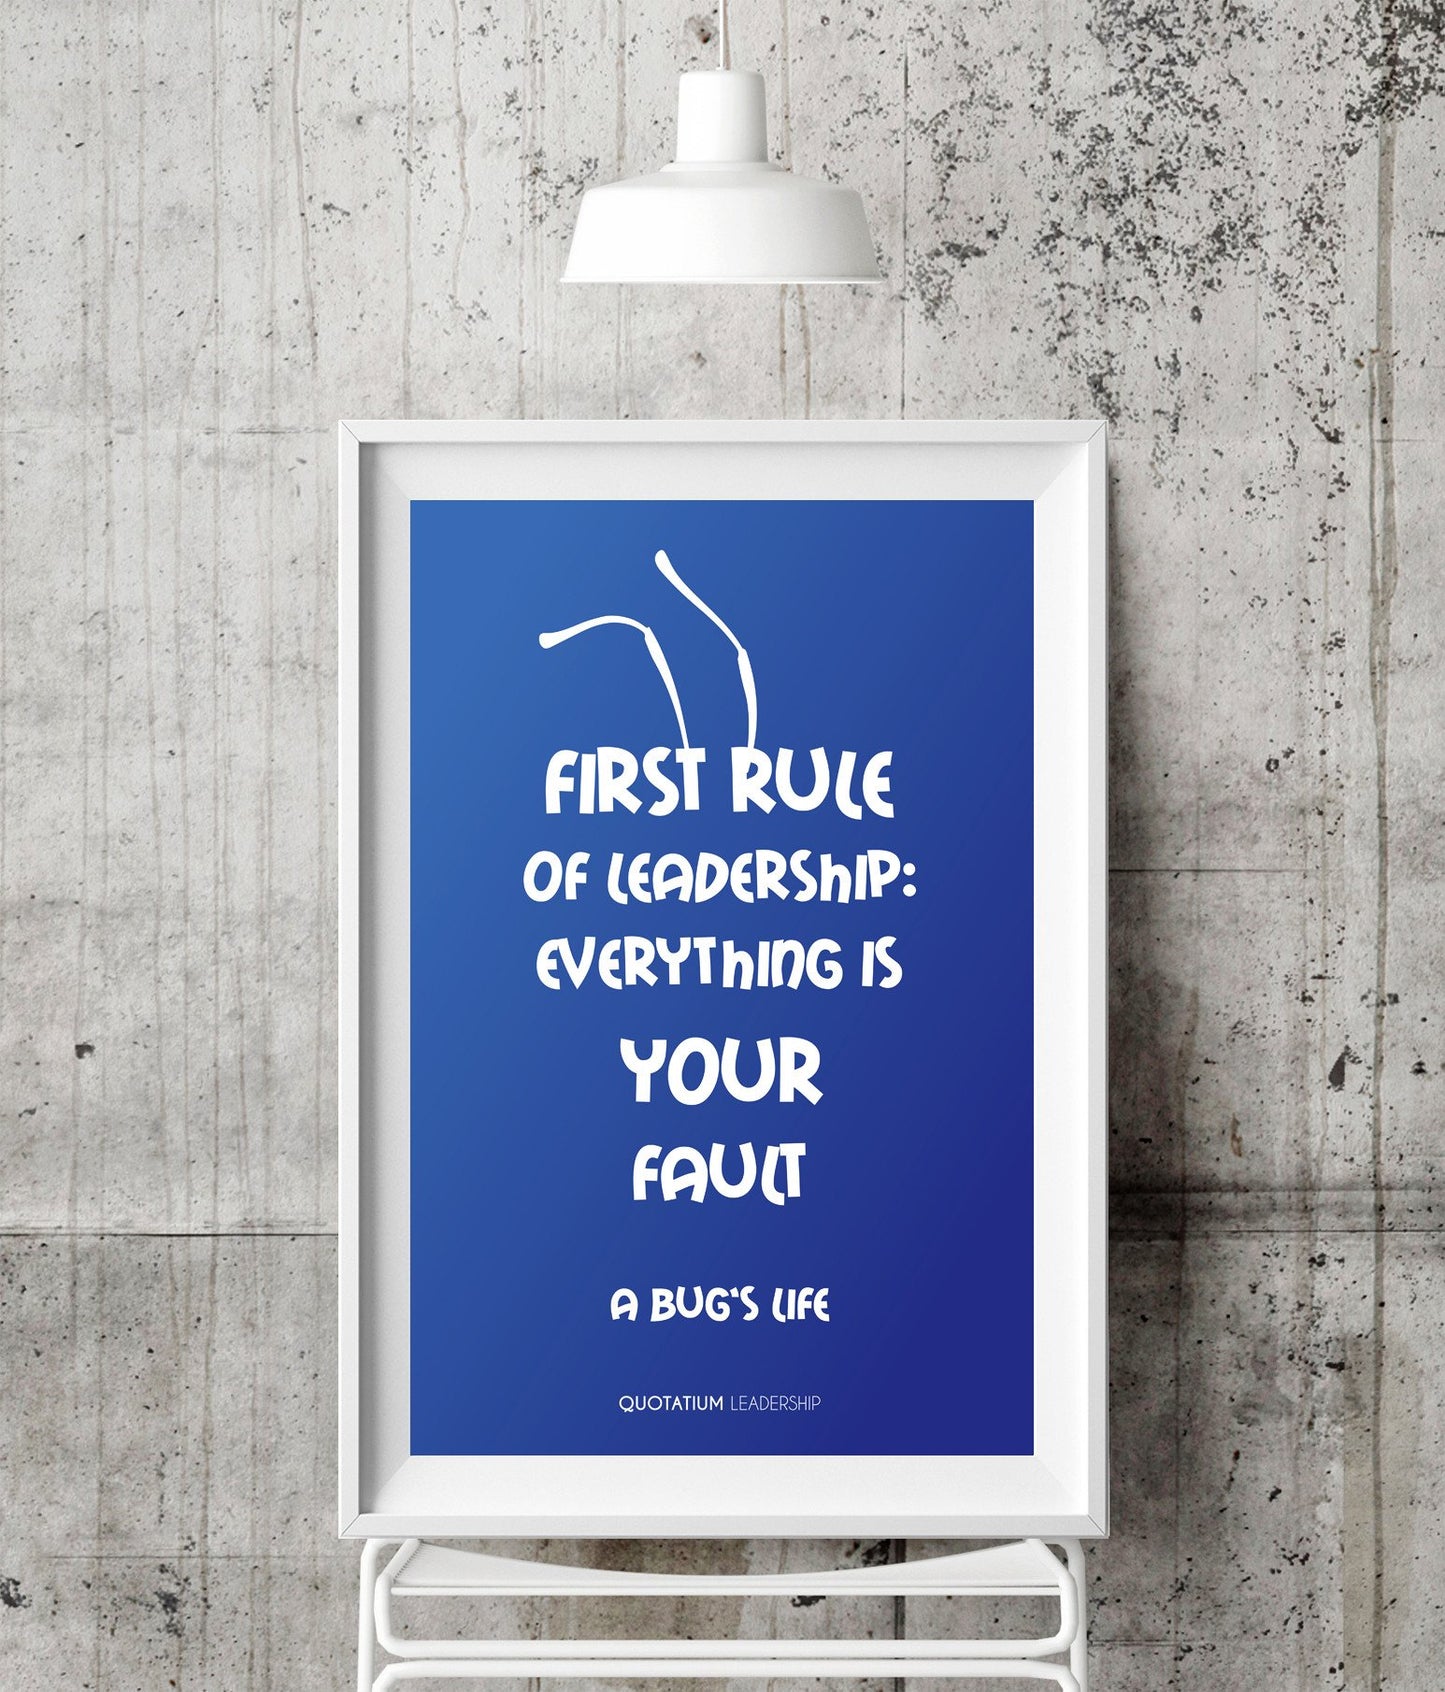 First rule of leadership